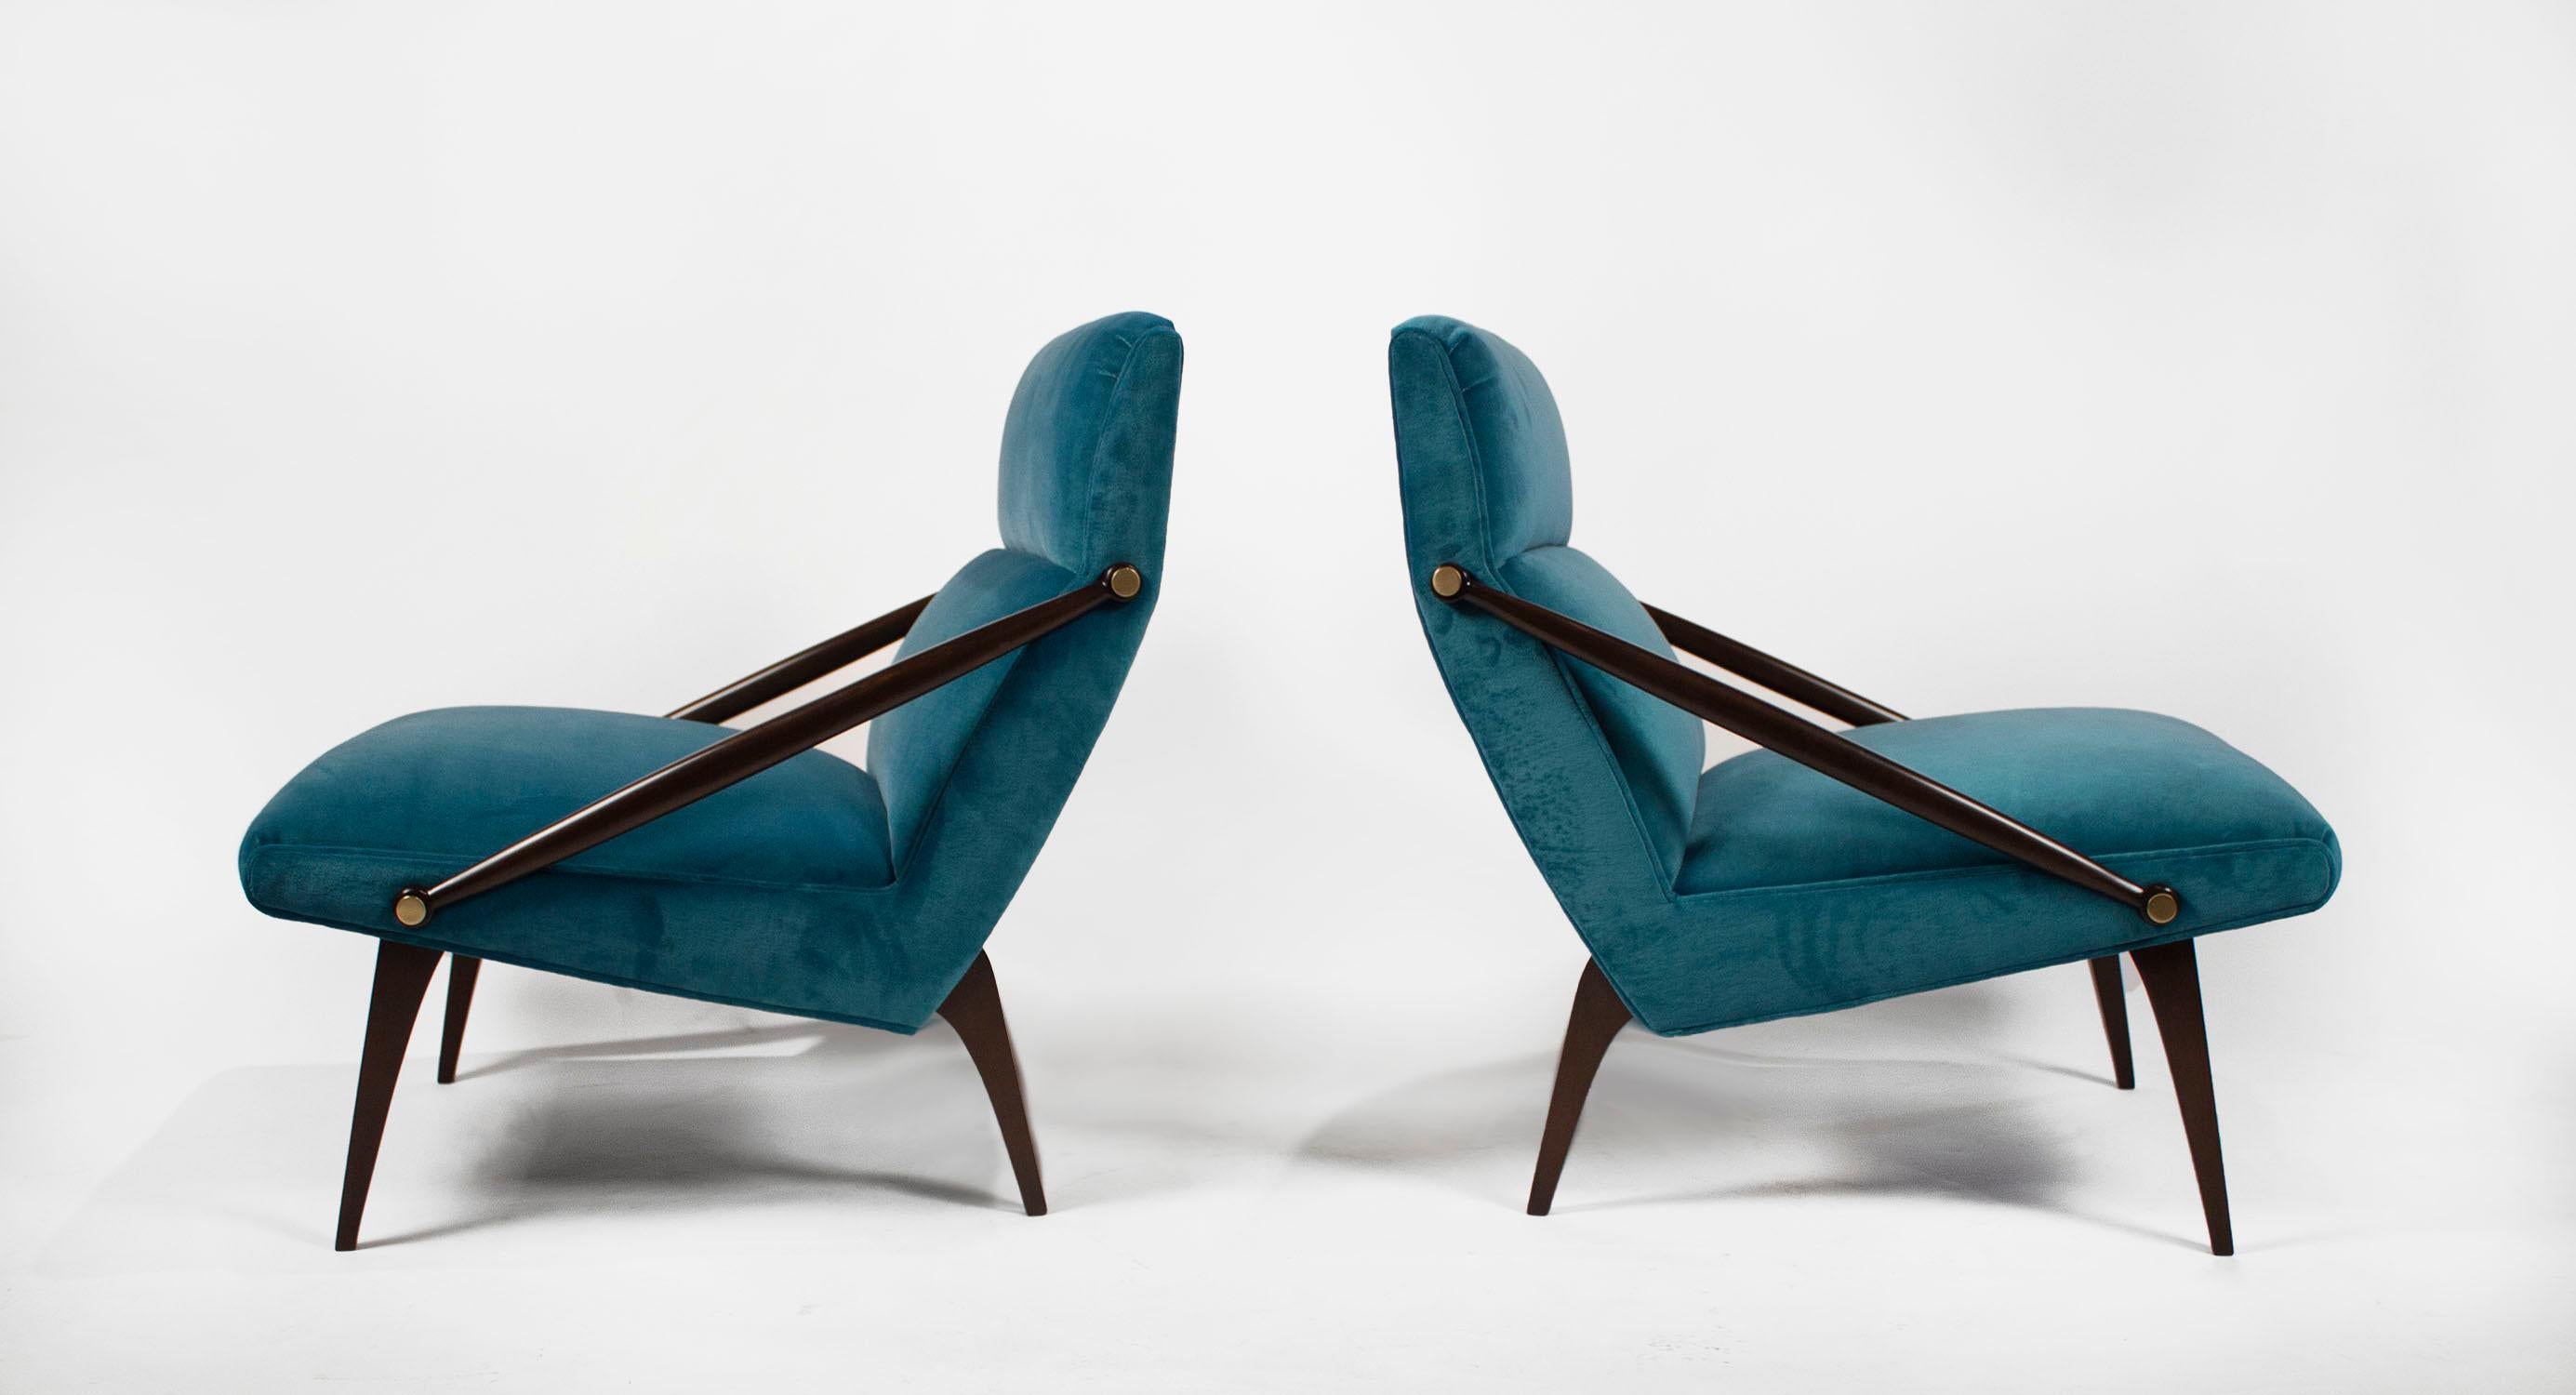 Rare paire de chaises longues conçues par l'architecte italien Gio Ponti et produites pour M. Singer & Sons vers 1950.
 
Restauré avec soin et dans les règles de l'art.